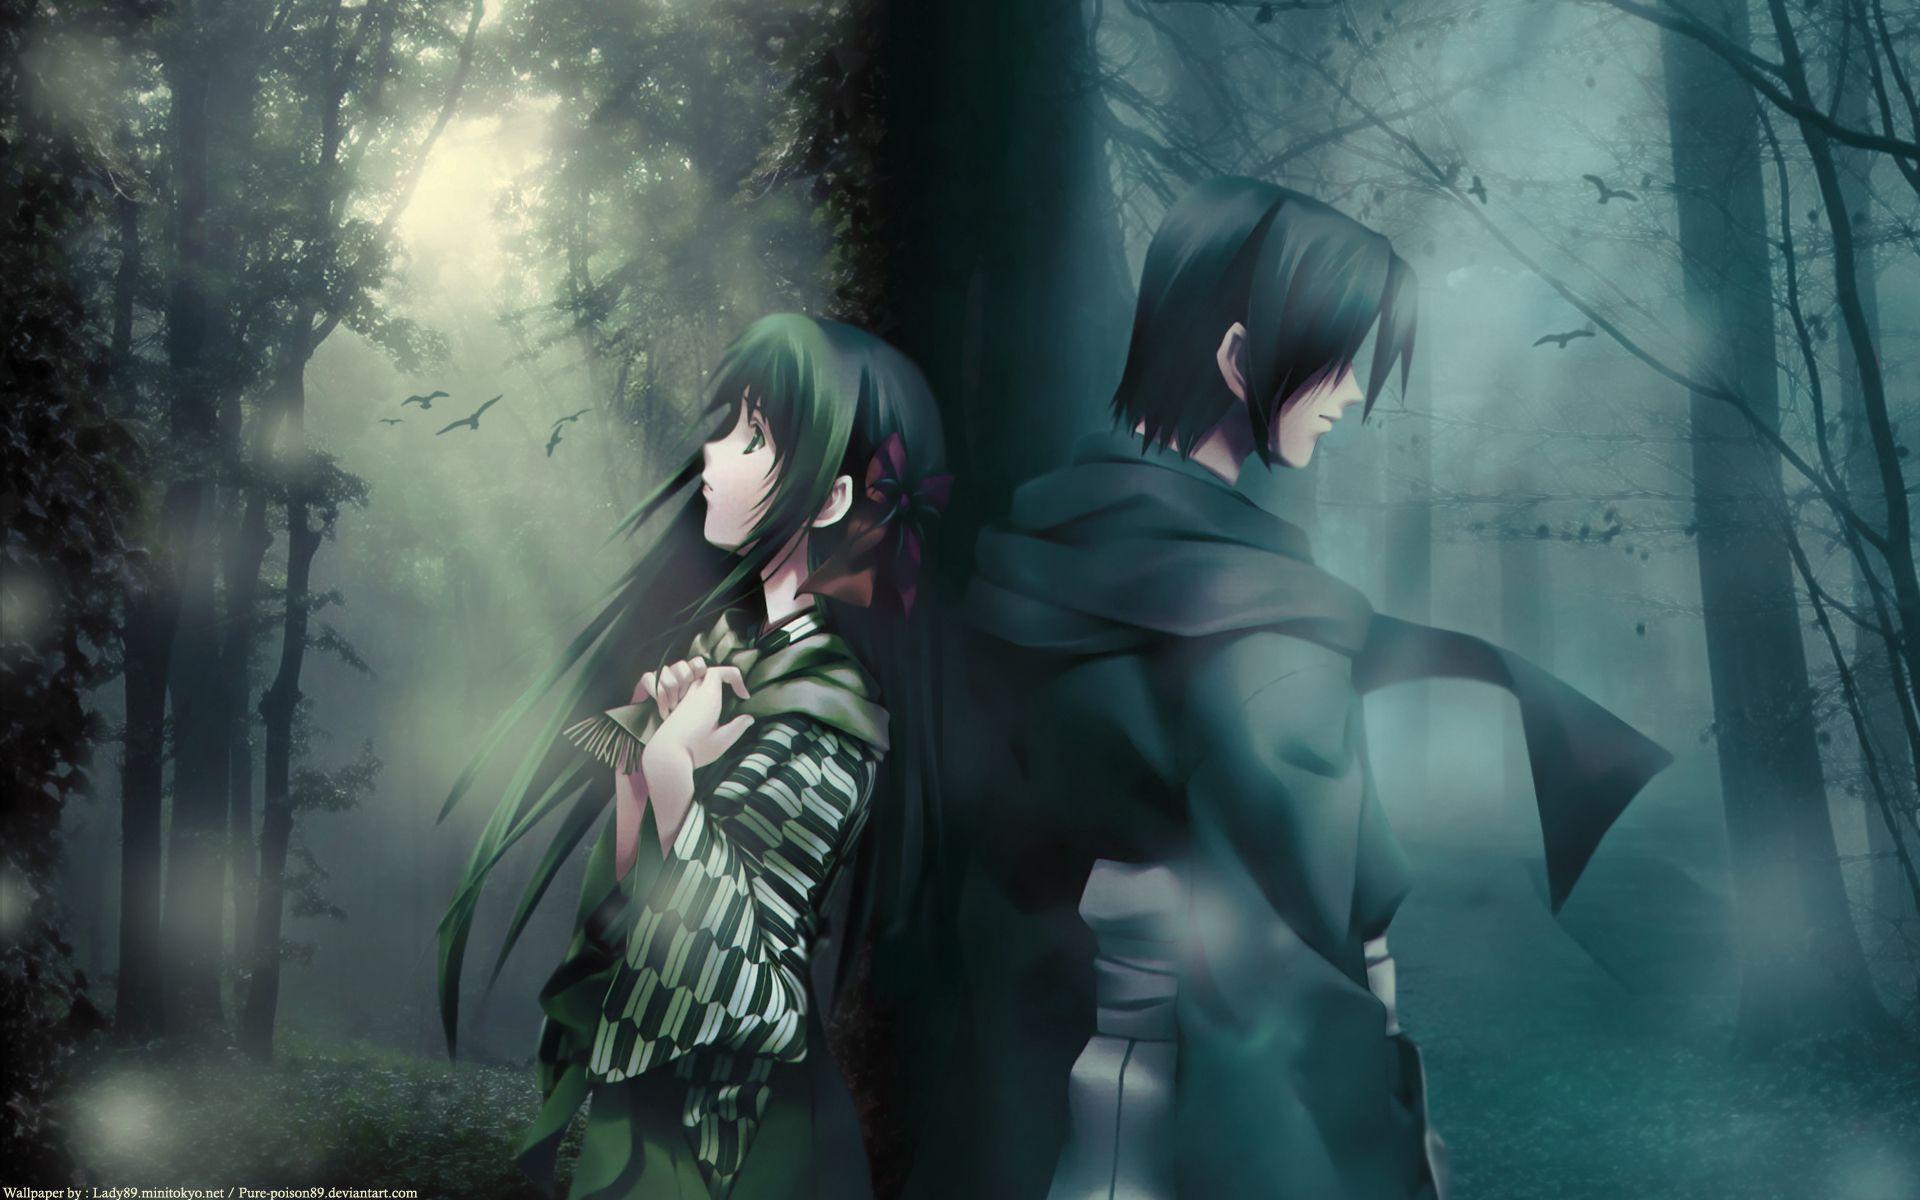 Sad Anime Couples 4K Wallpapers - Top Free Sad Anime Couples 4K Backgrounds  - WallpaperAccess